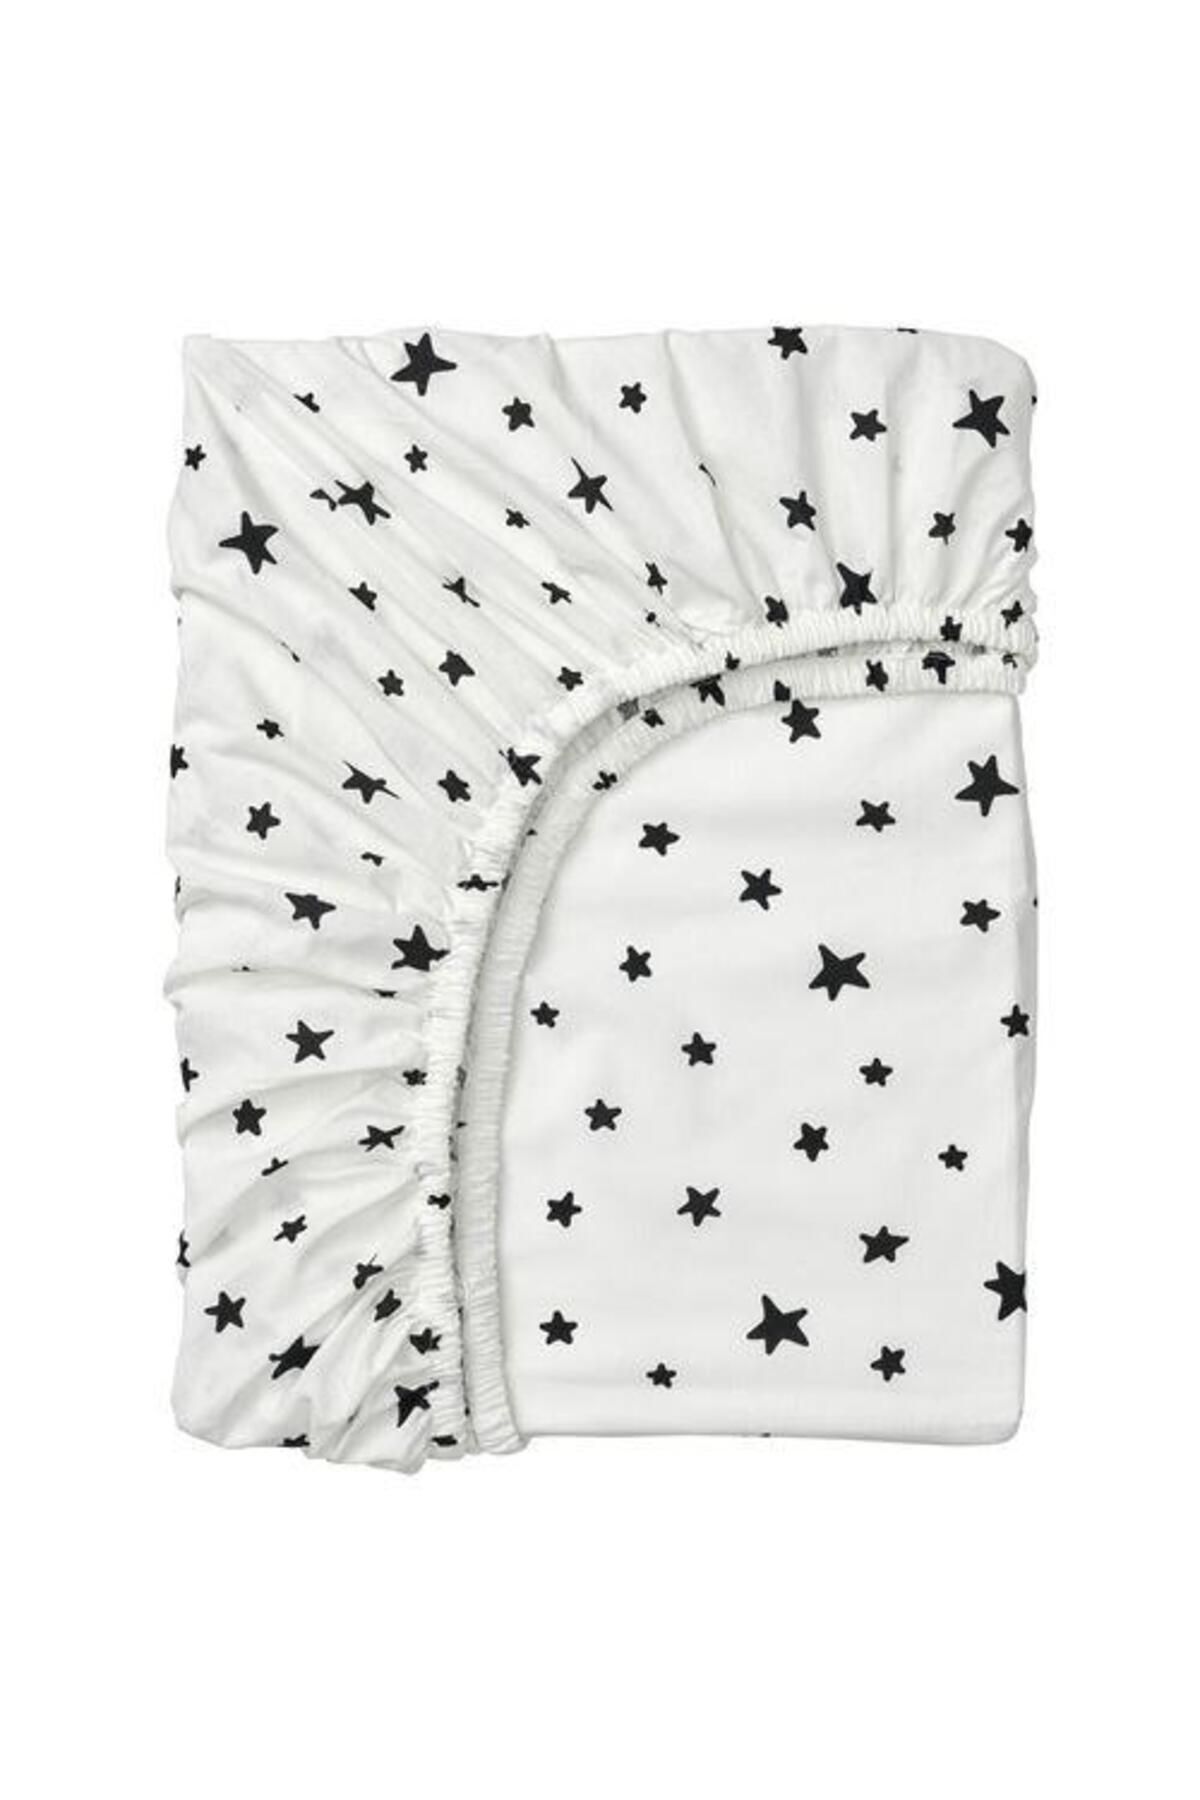 IKEA Çocuk Odası Lastikli Çarşaf 90x200 Cm Beyaz-siyah Yıldız Desenli Meridyendukkan Pamuklu